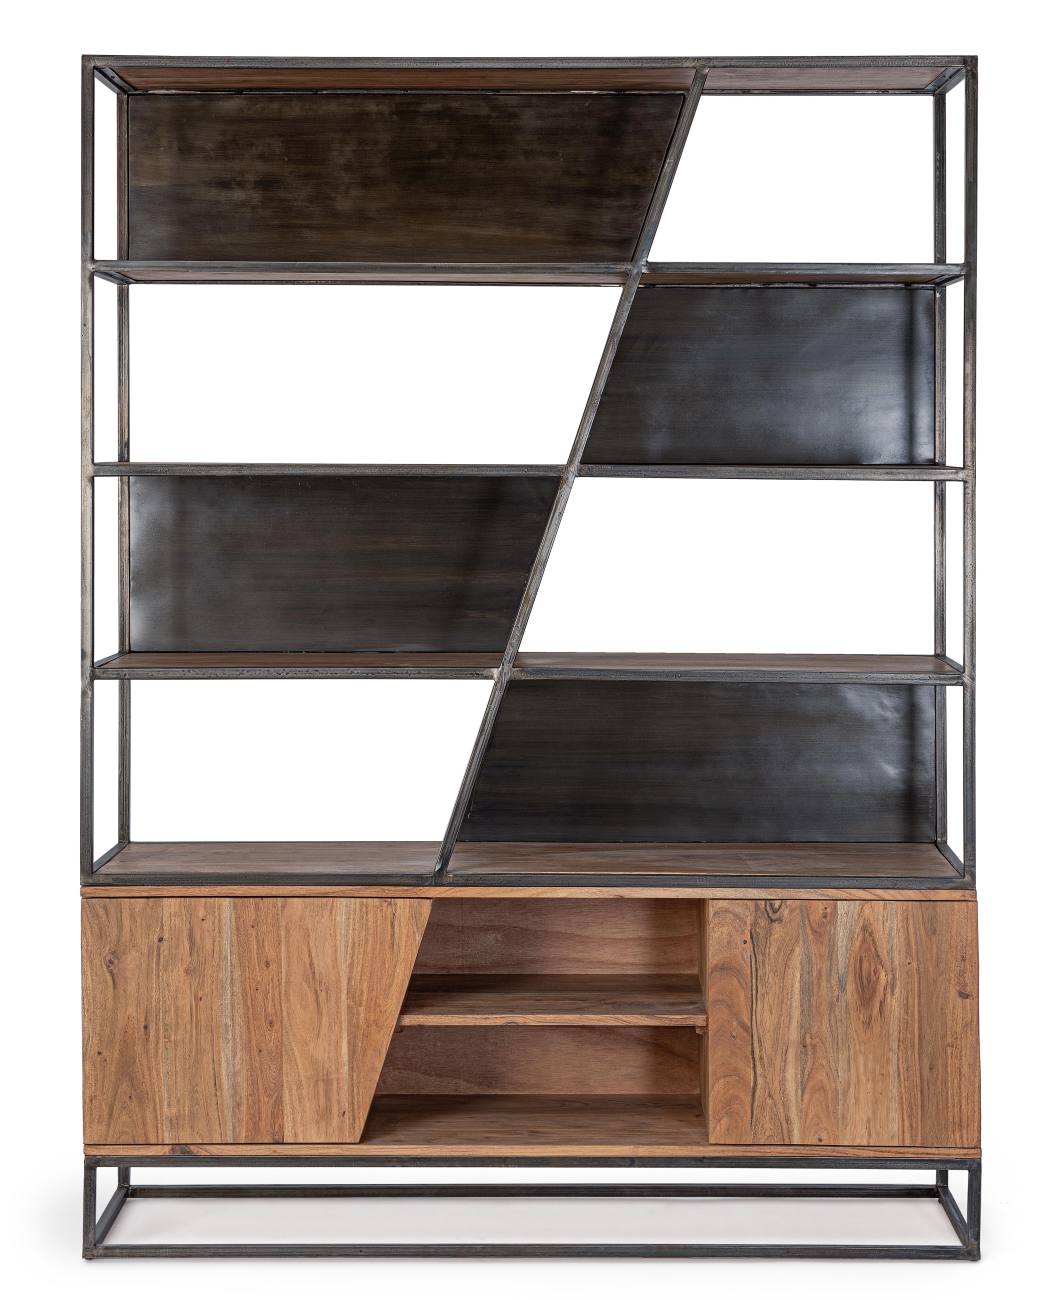 Das Bücherregal Janak überzeugt mit seinem modernen Stil. Gefertigt wurde es aus Akazienholz, welches einen natürlichen Farbton besitzt. Das Gestell ist aus Metall und hat eine schwarze Farbe. Das Highboard verfügt über zwei Türen.